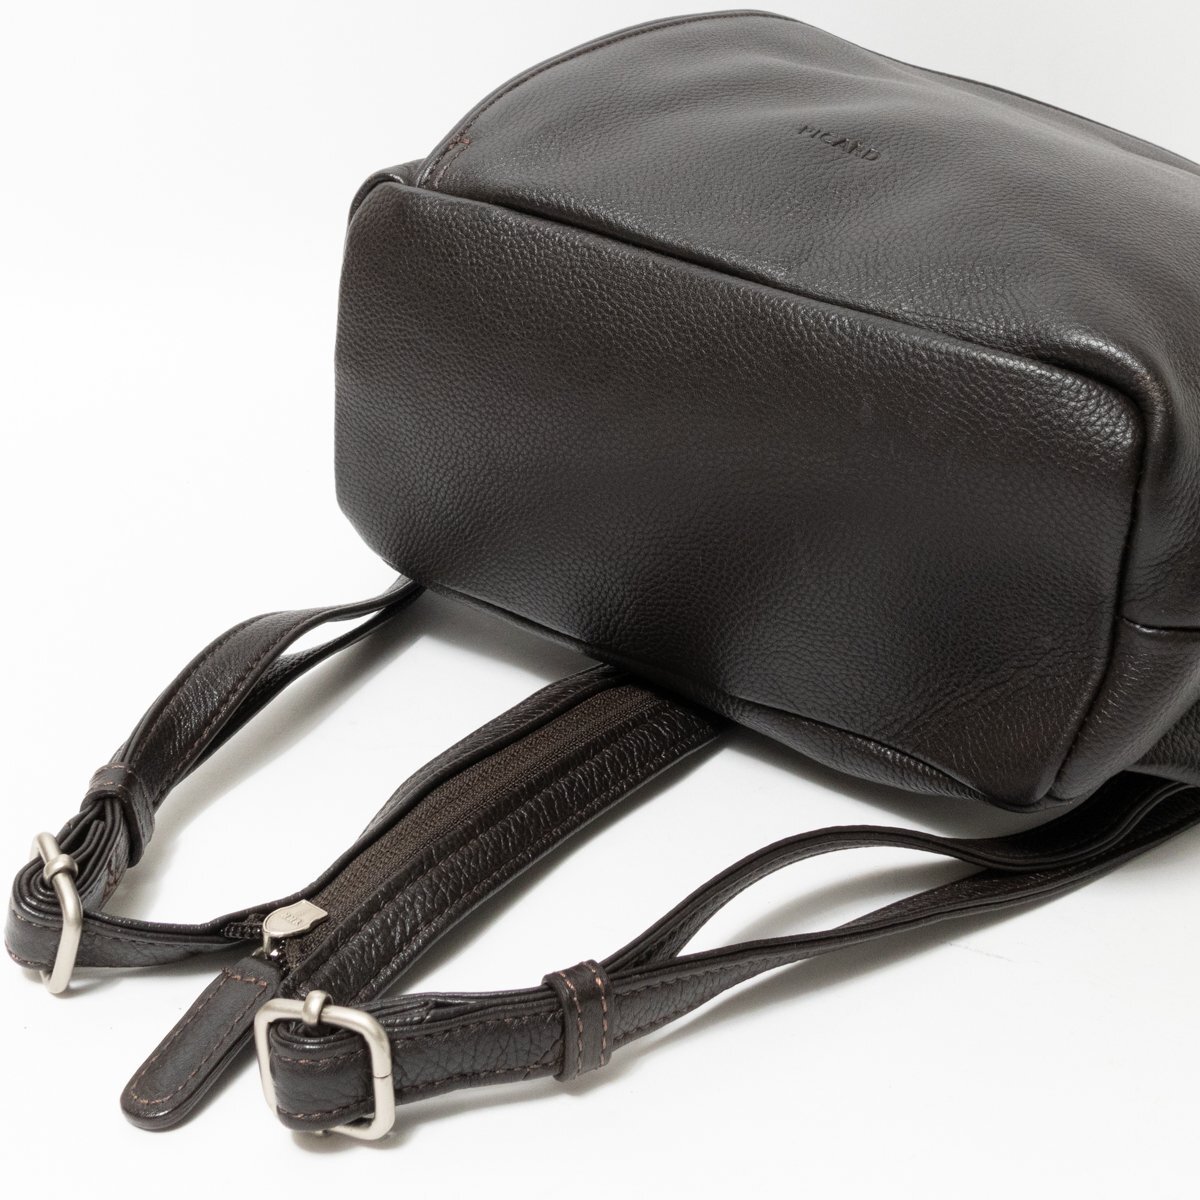 [1 jpy start ]PICARDpi card Lizliz2way backpack rucksack one shoulder bag dark brown Cafe cow leather leather 